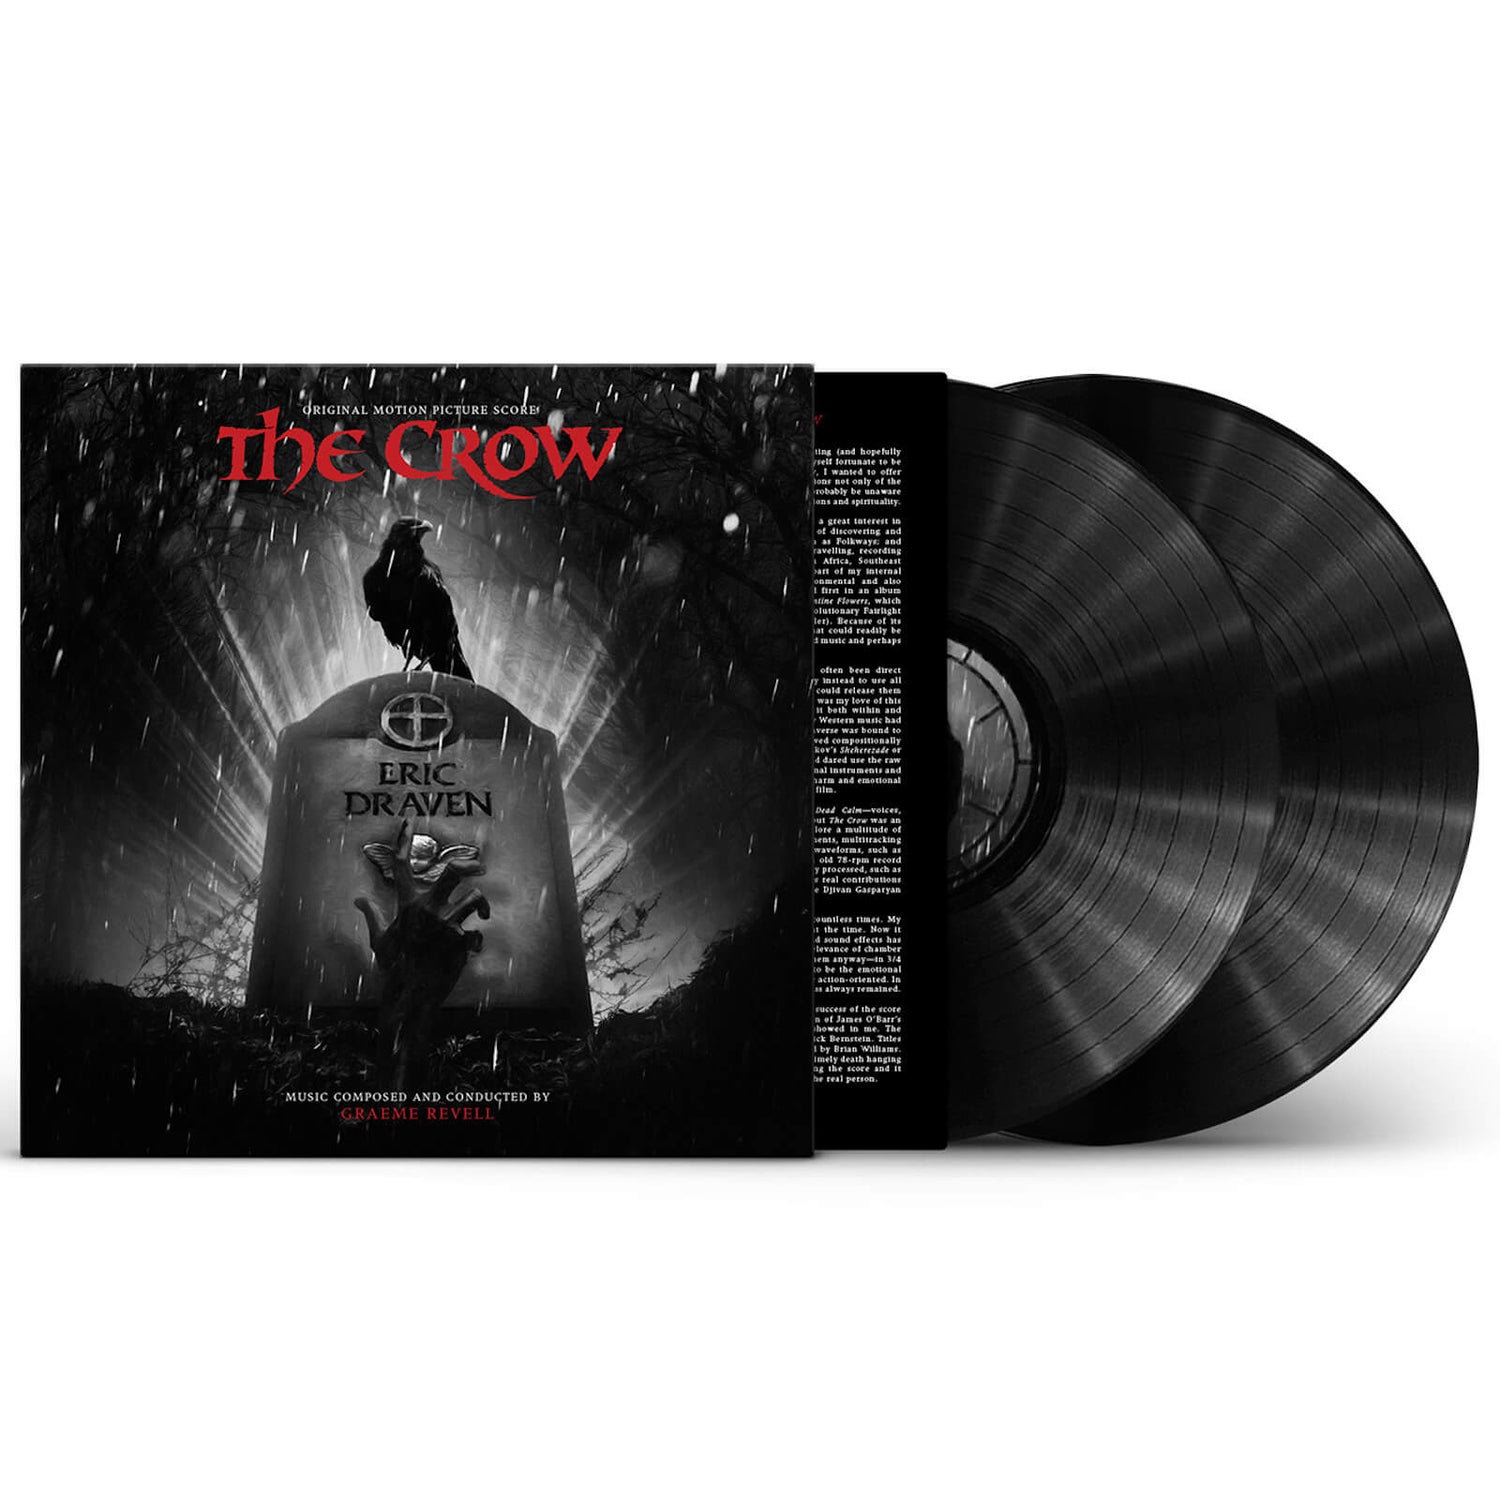 The Crow (Original Motion Picture Score) (Deluxe Edition) Vinyl 2LP